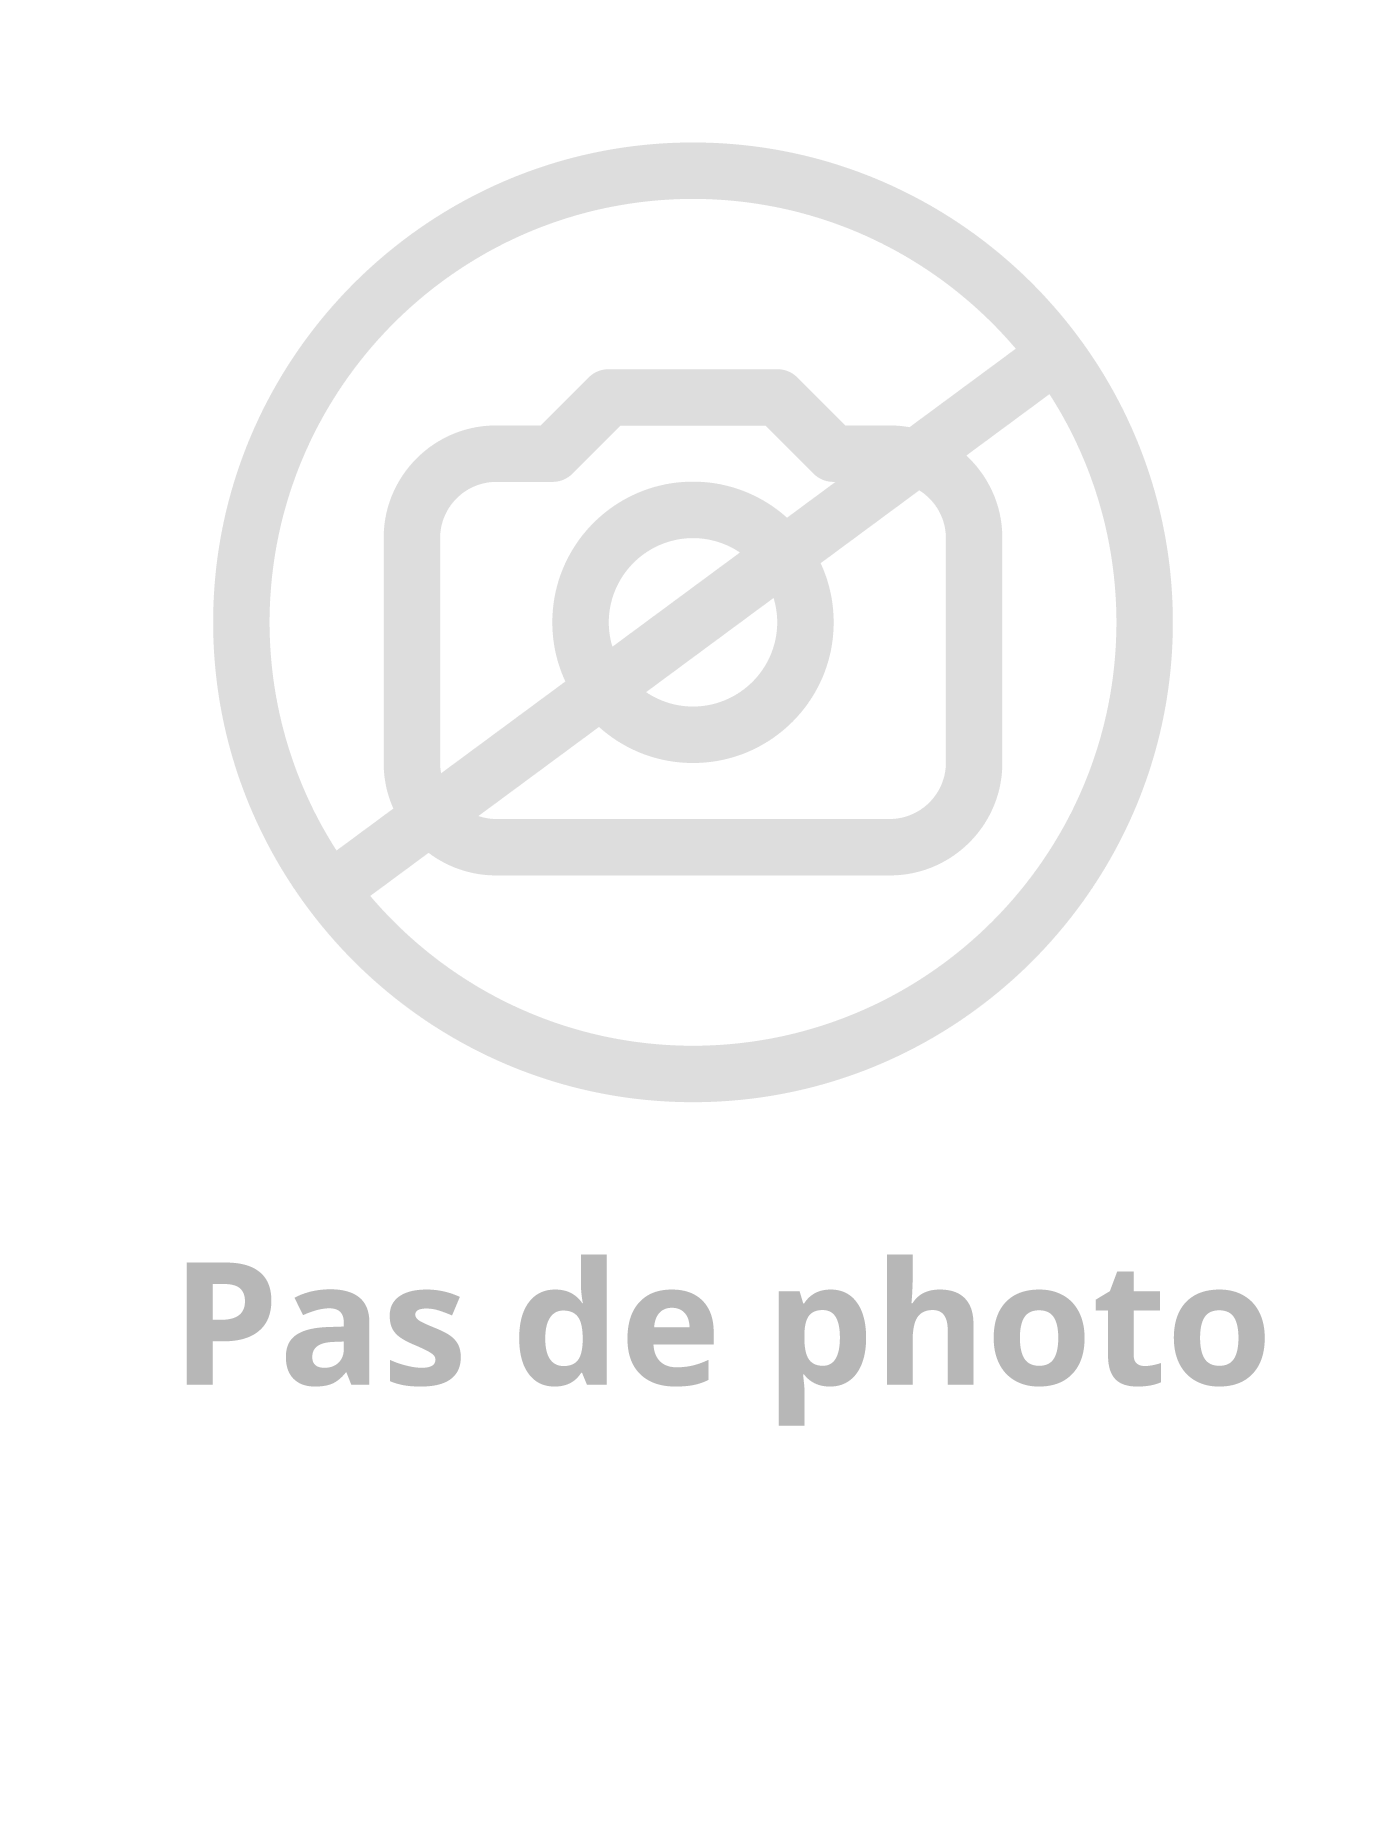 Image du produit PASSAGE DE CÂBLE EN APPLIQUE LG. 600mm - 10 BORNES DEBROCHABLES - GAINE ACIER INOX / IP64 IK08